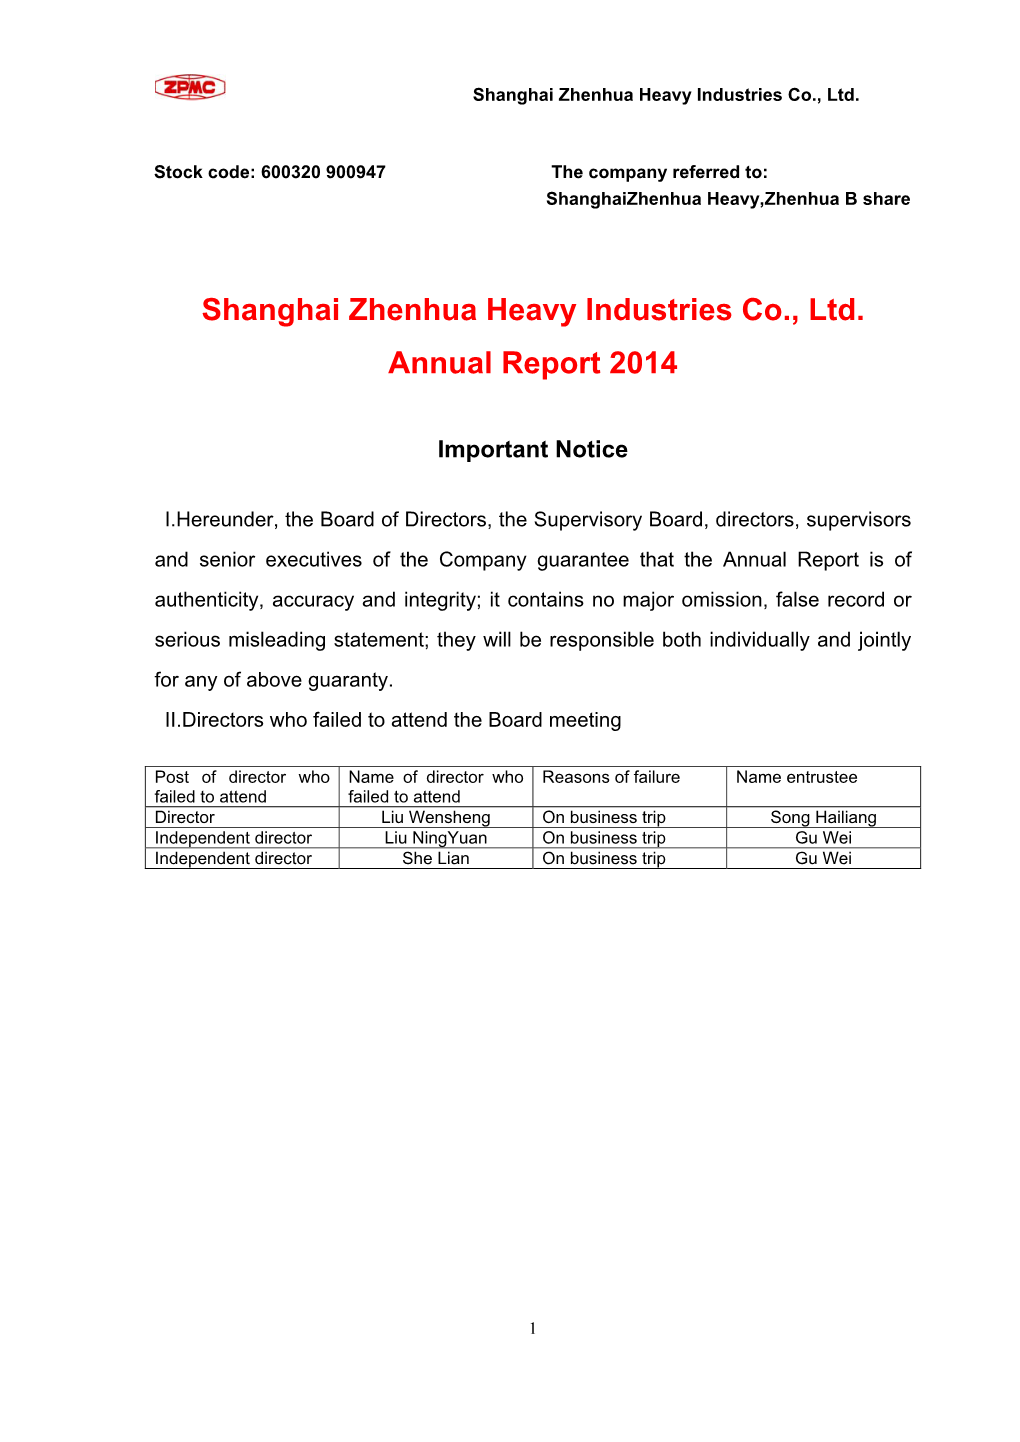 Shanghai Zhenhua Heavy Industries Co., Ltd. Annual Report 2014